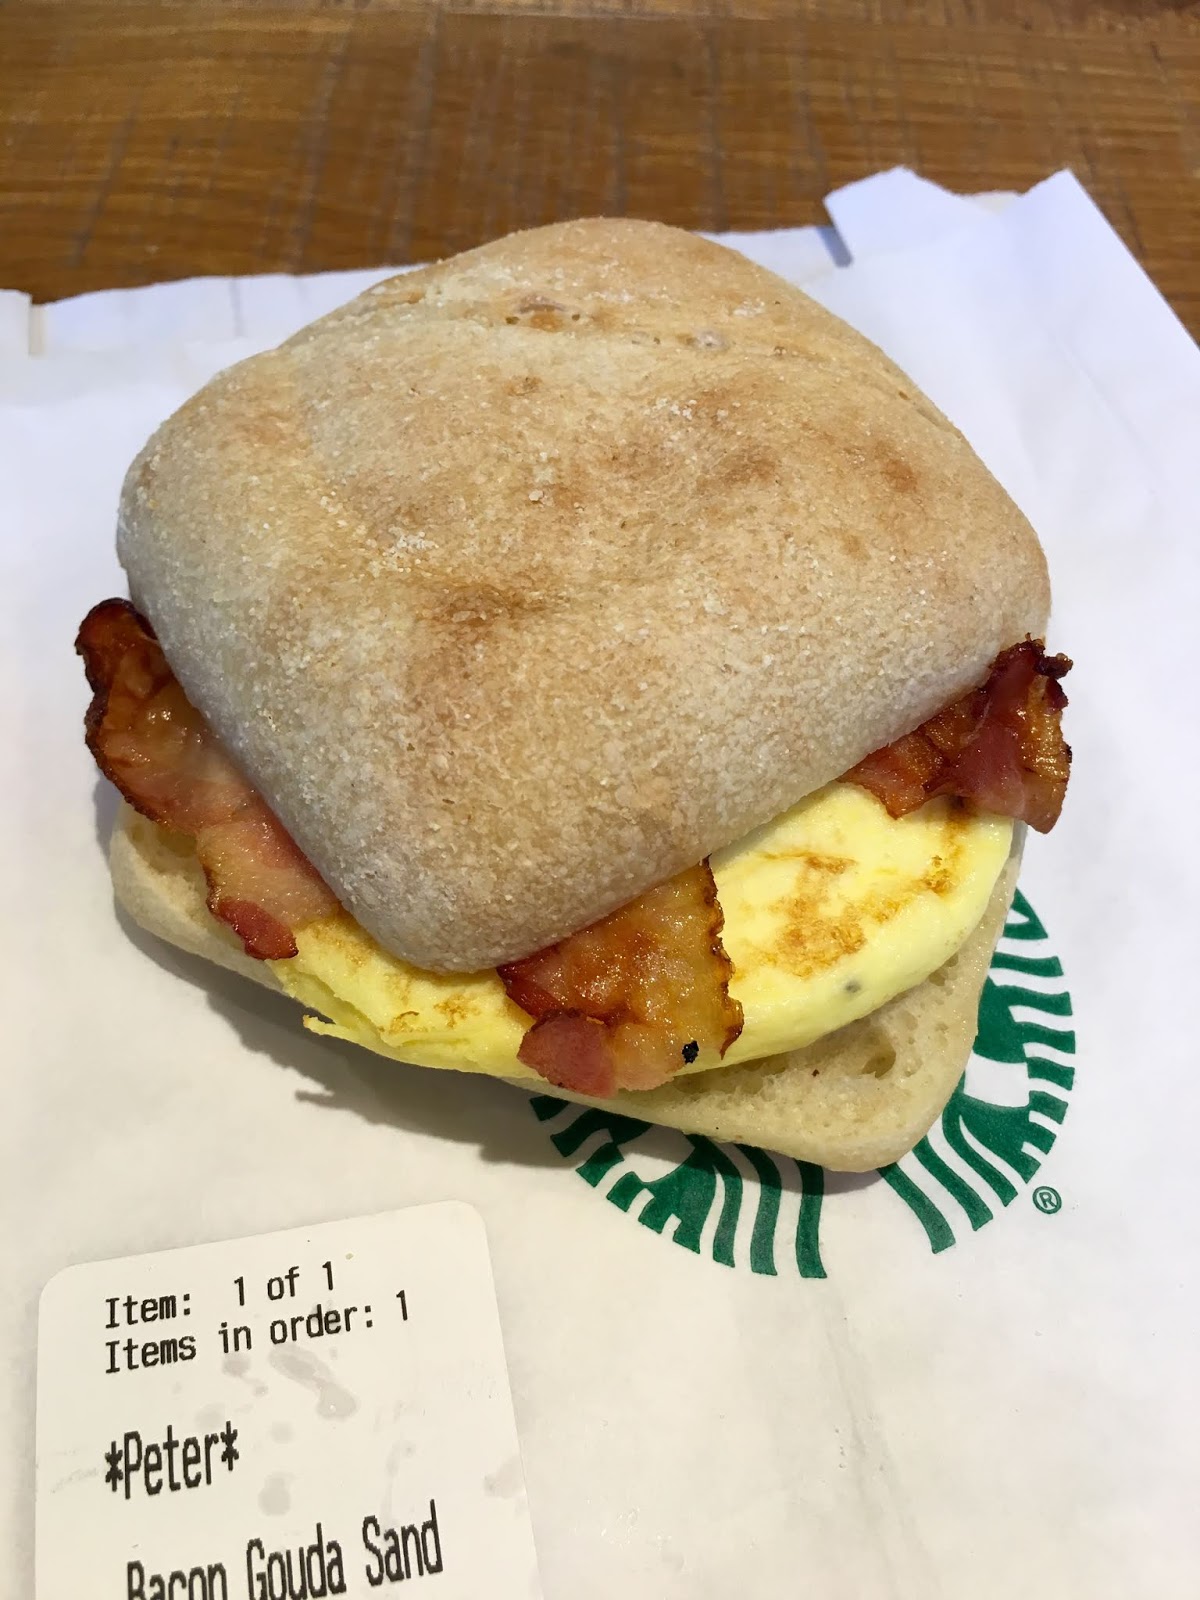 Copycat Starbucks Bacon Gouda Breakfast Sandwich 